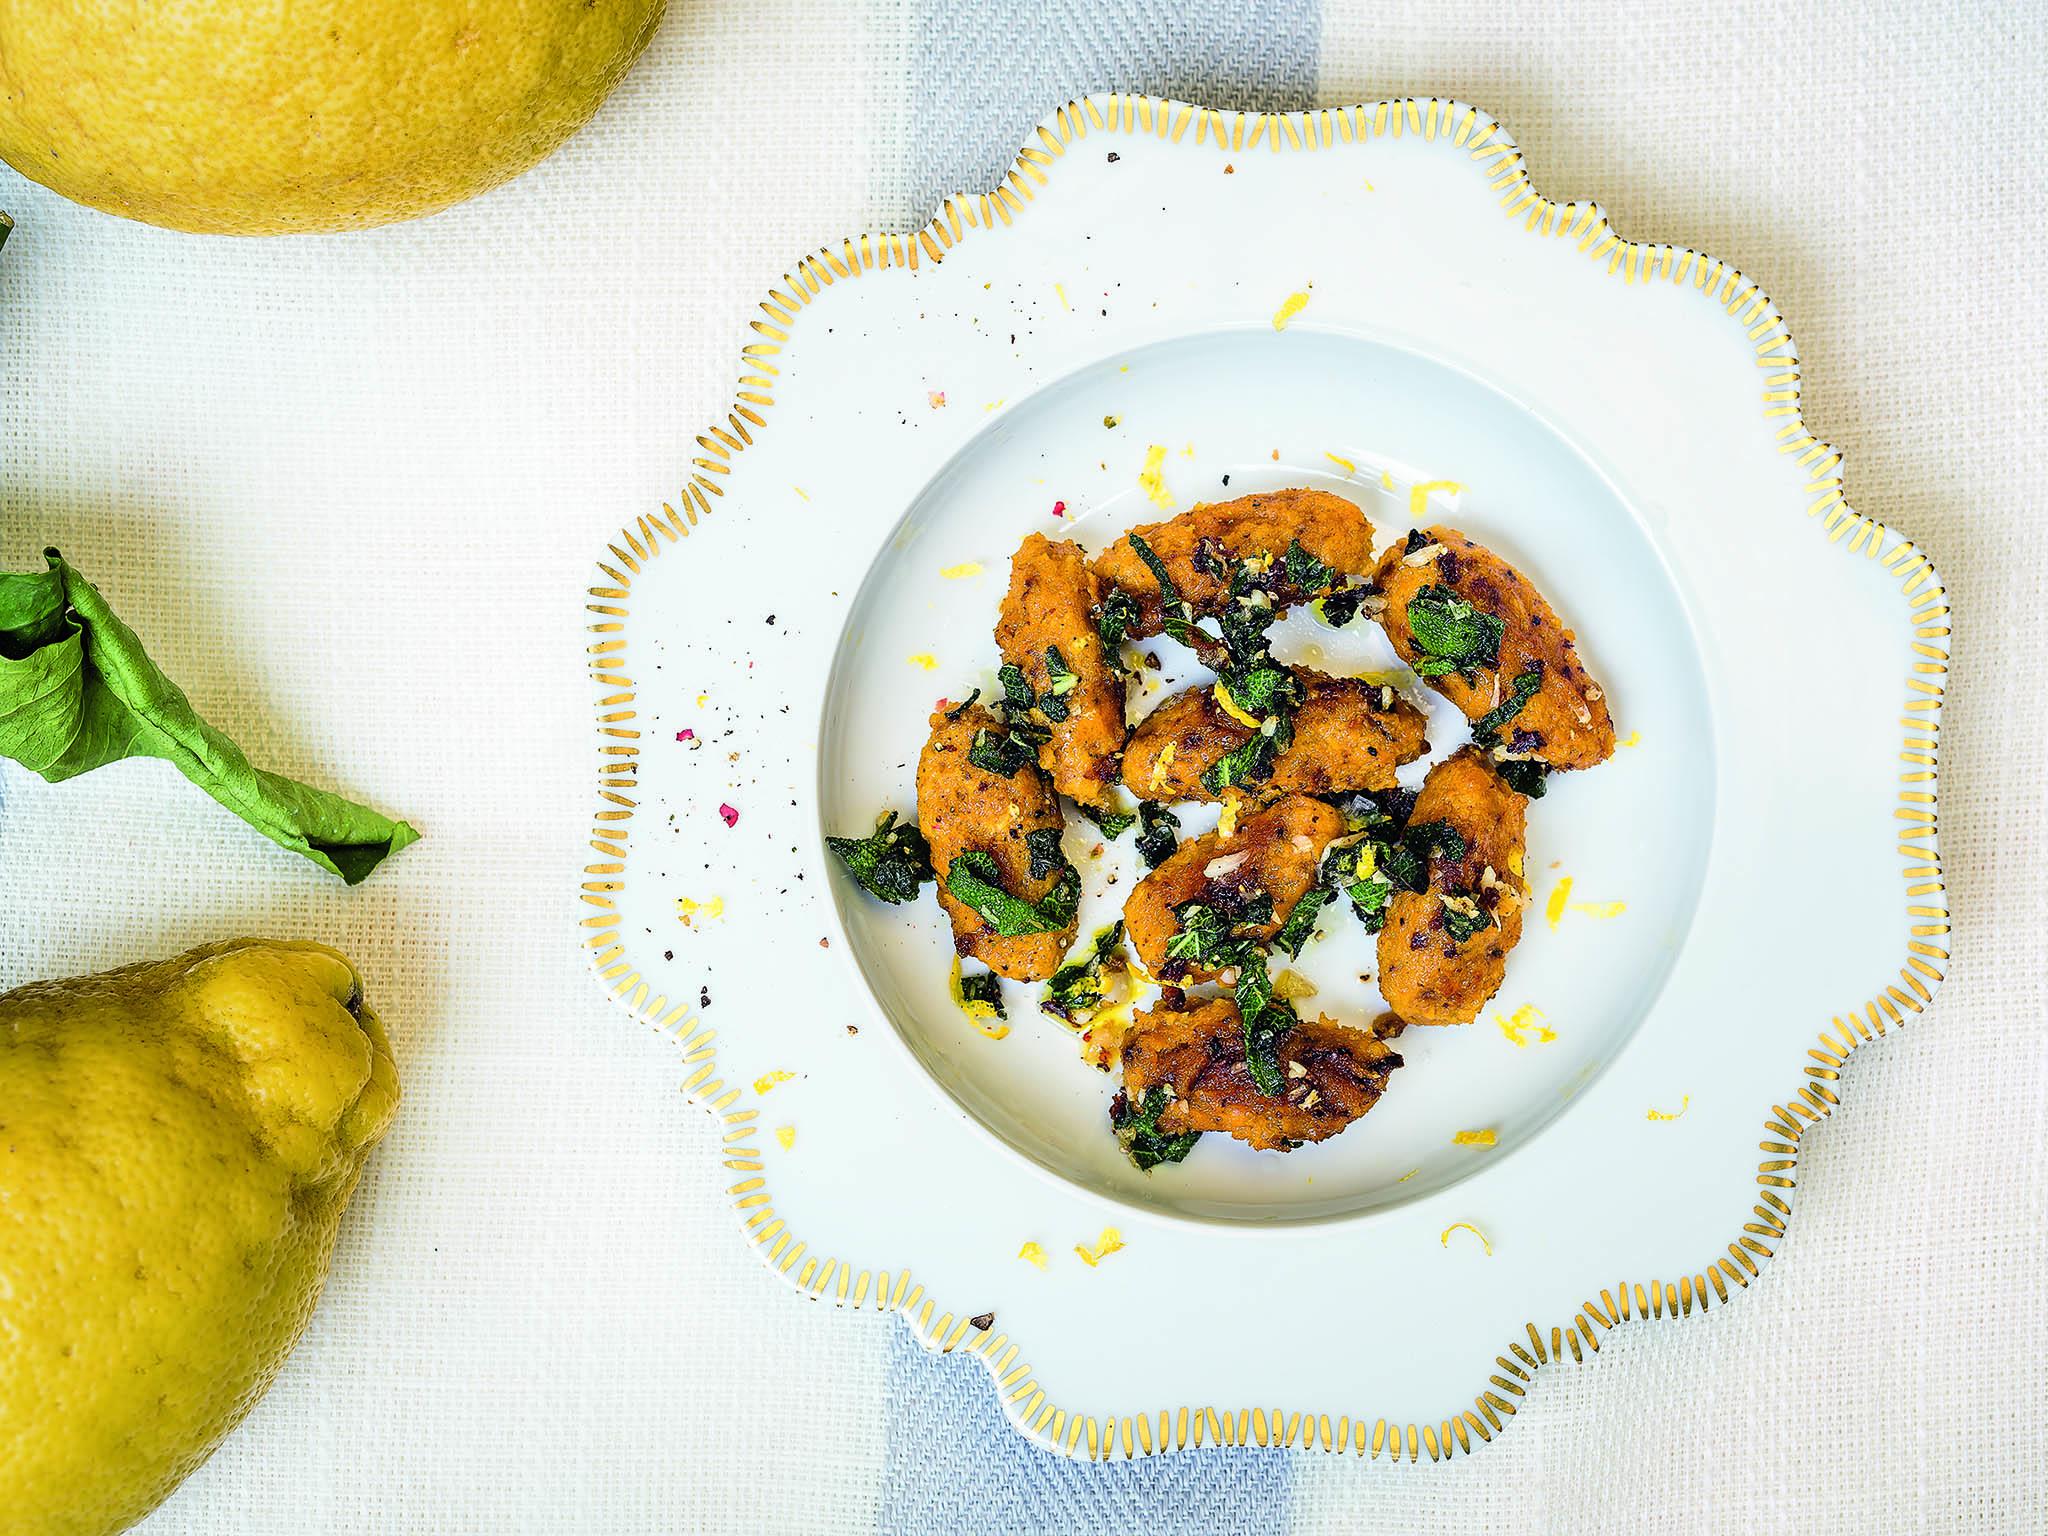 Squash gnocchi from Capri (recipe below)